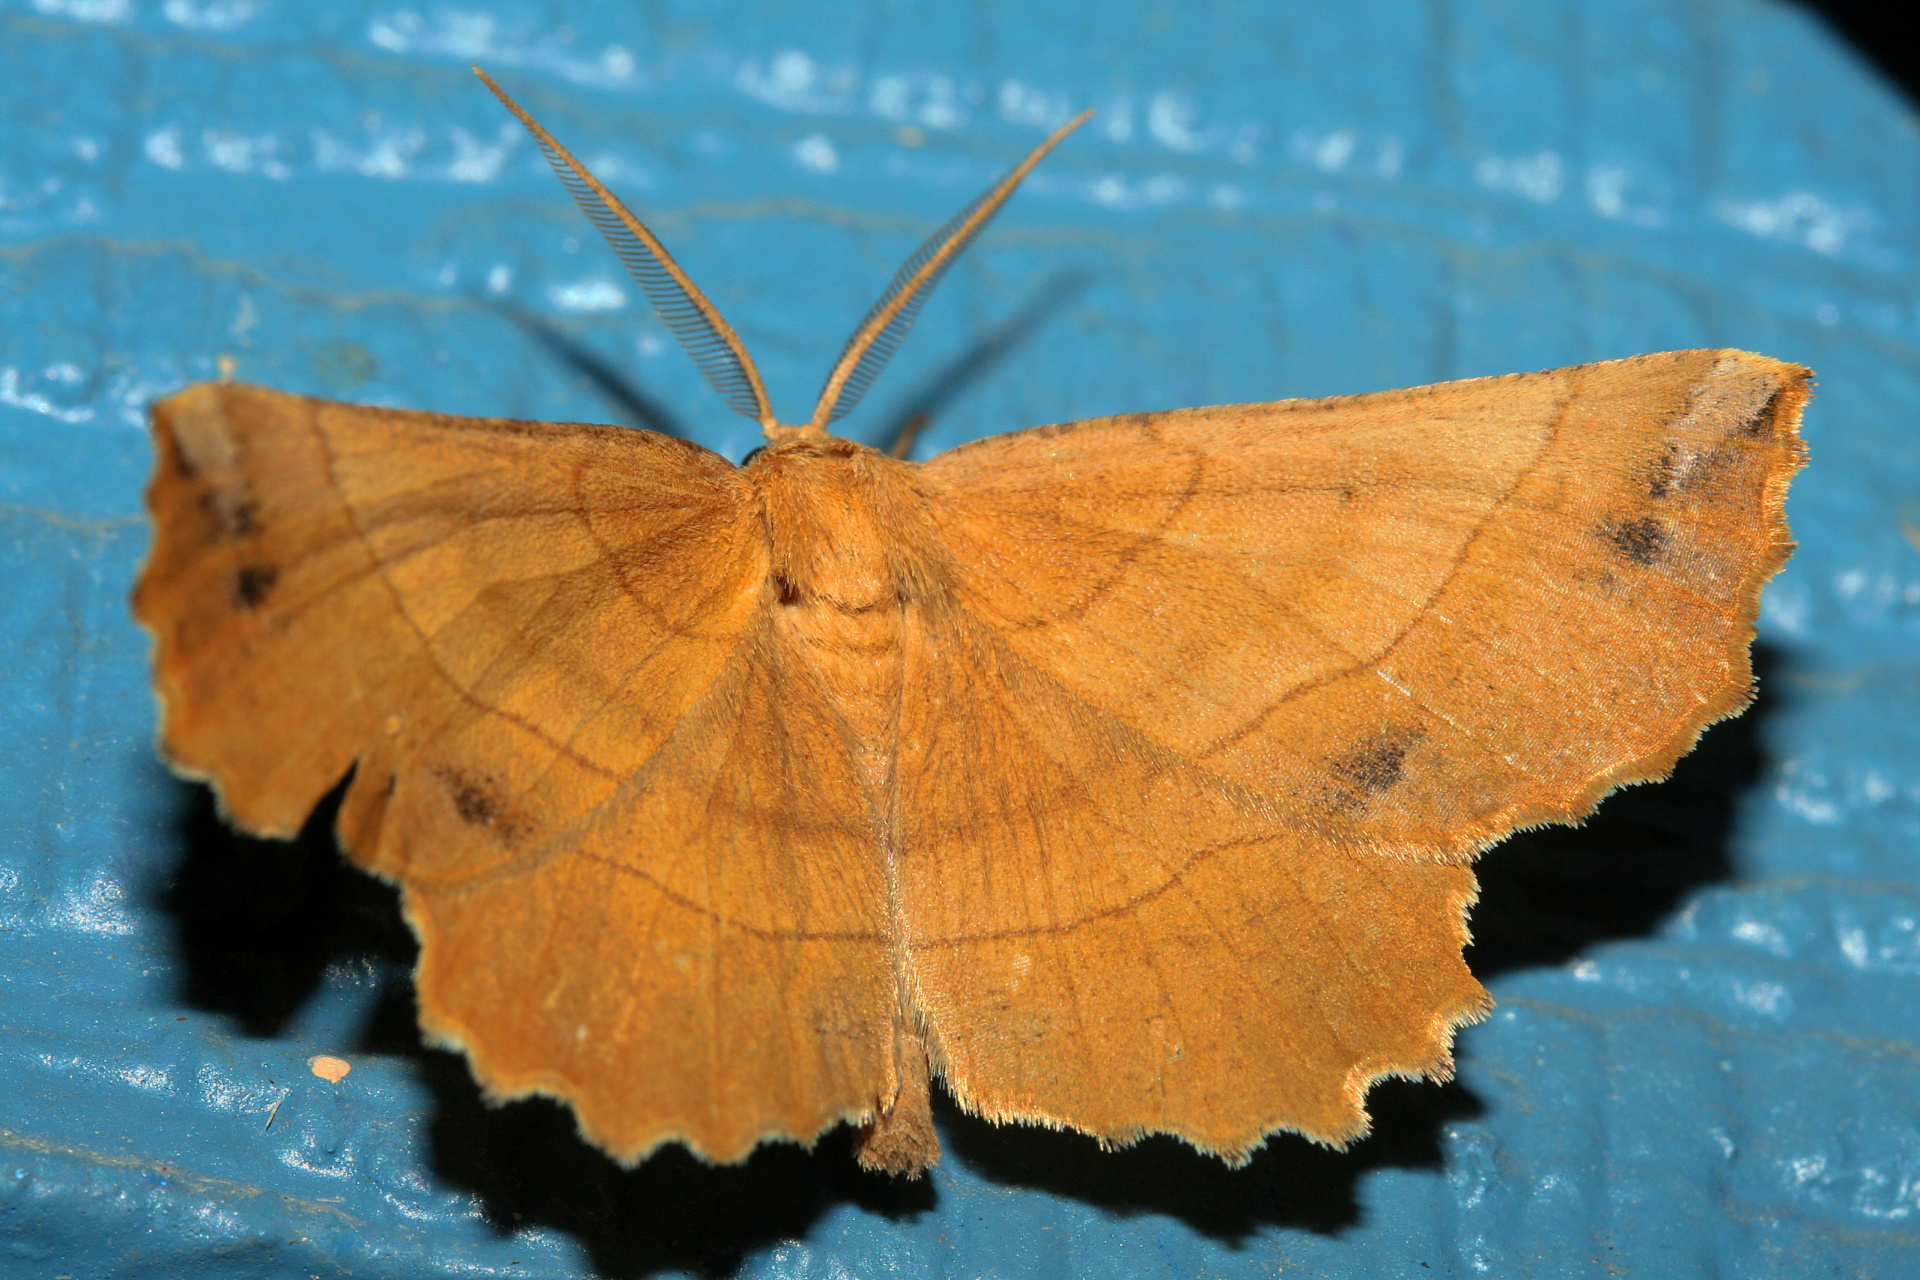 Euchlaena johnsonaria (Podróże » USA: Epopeja Czejeńska » Zwierzęta » Owady » Motyle i ćmy » Geometridae)